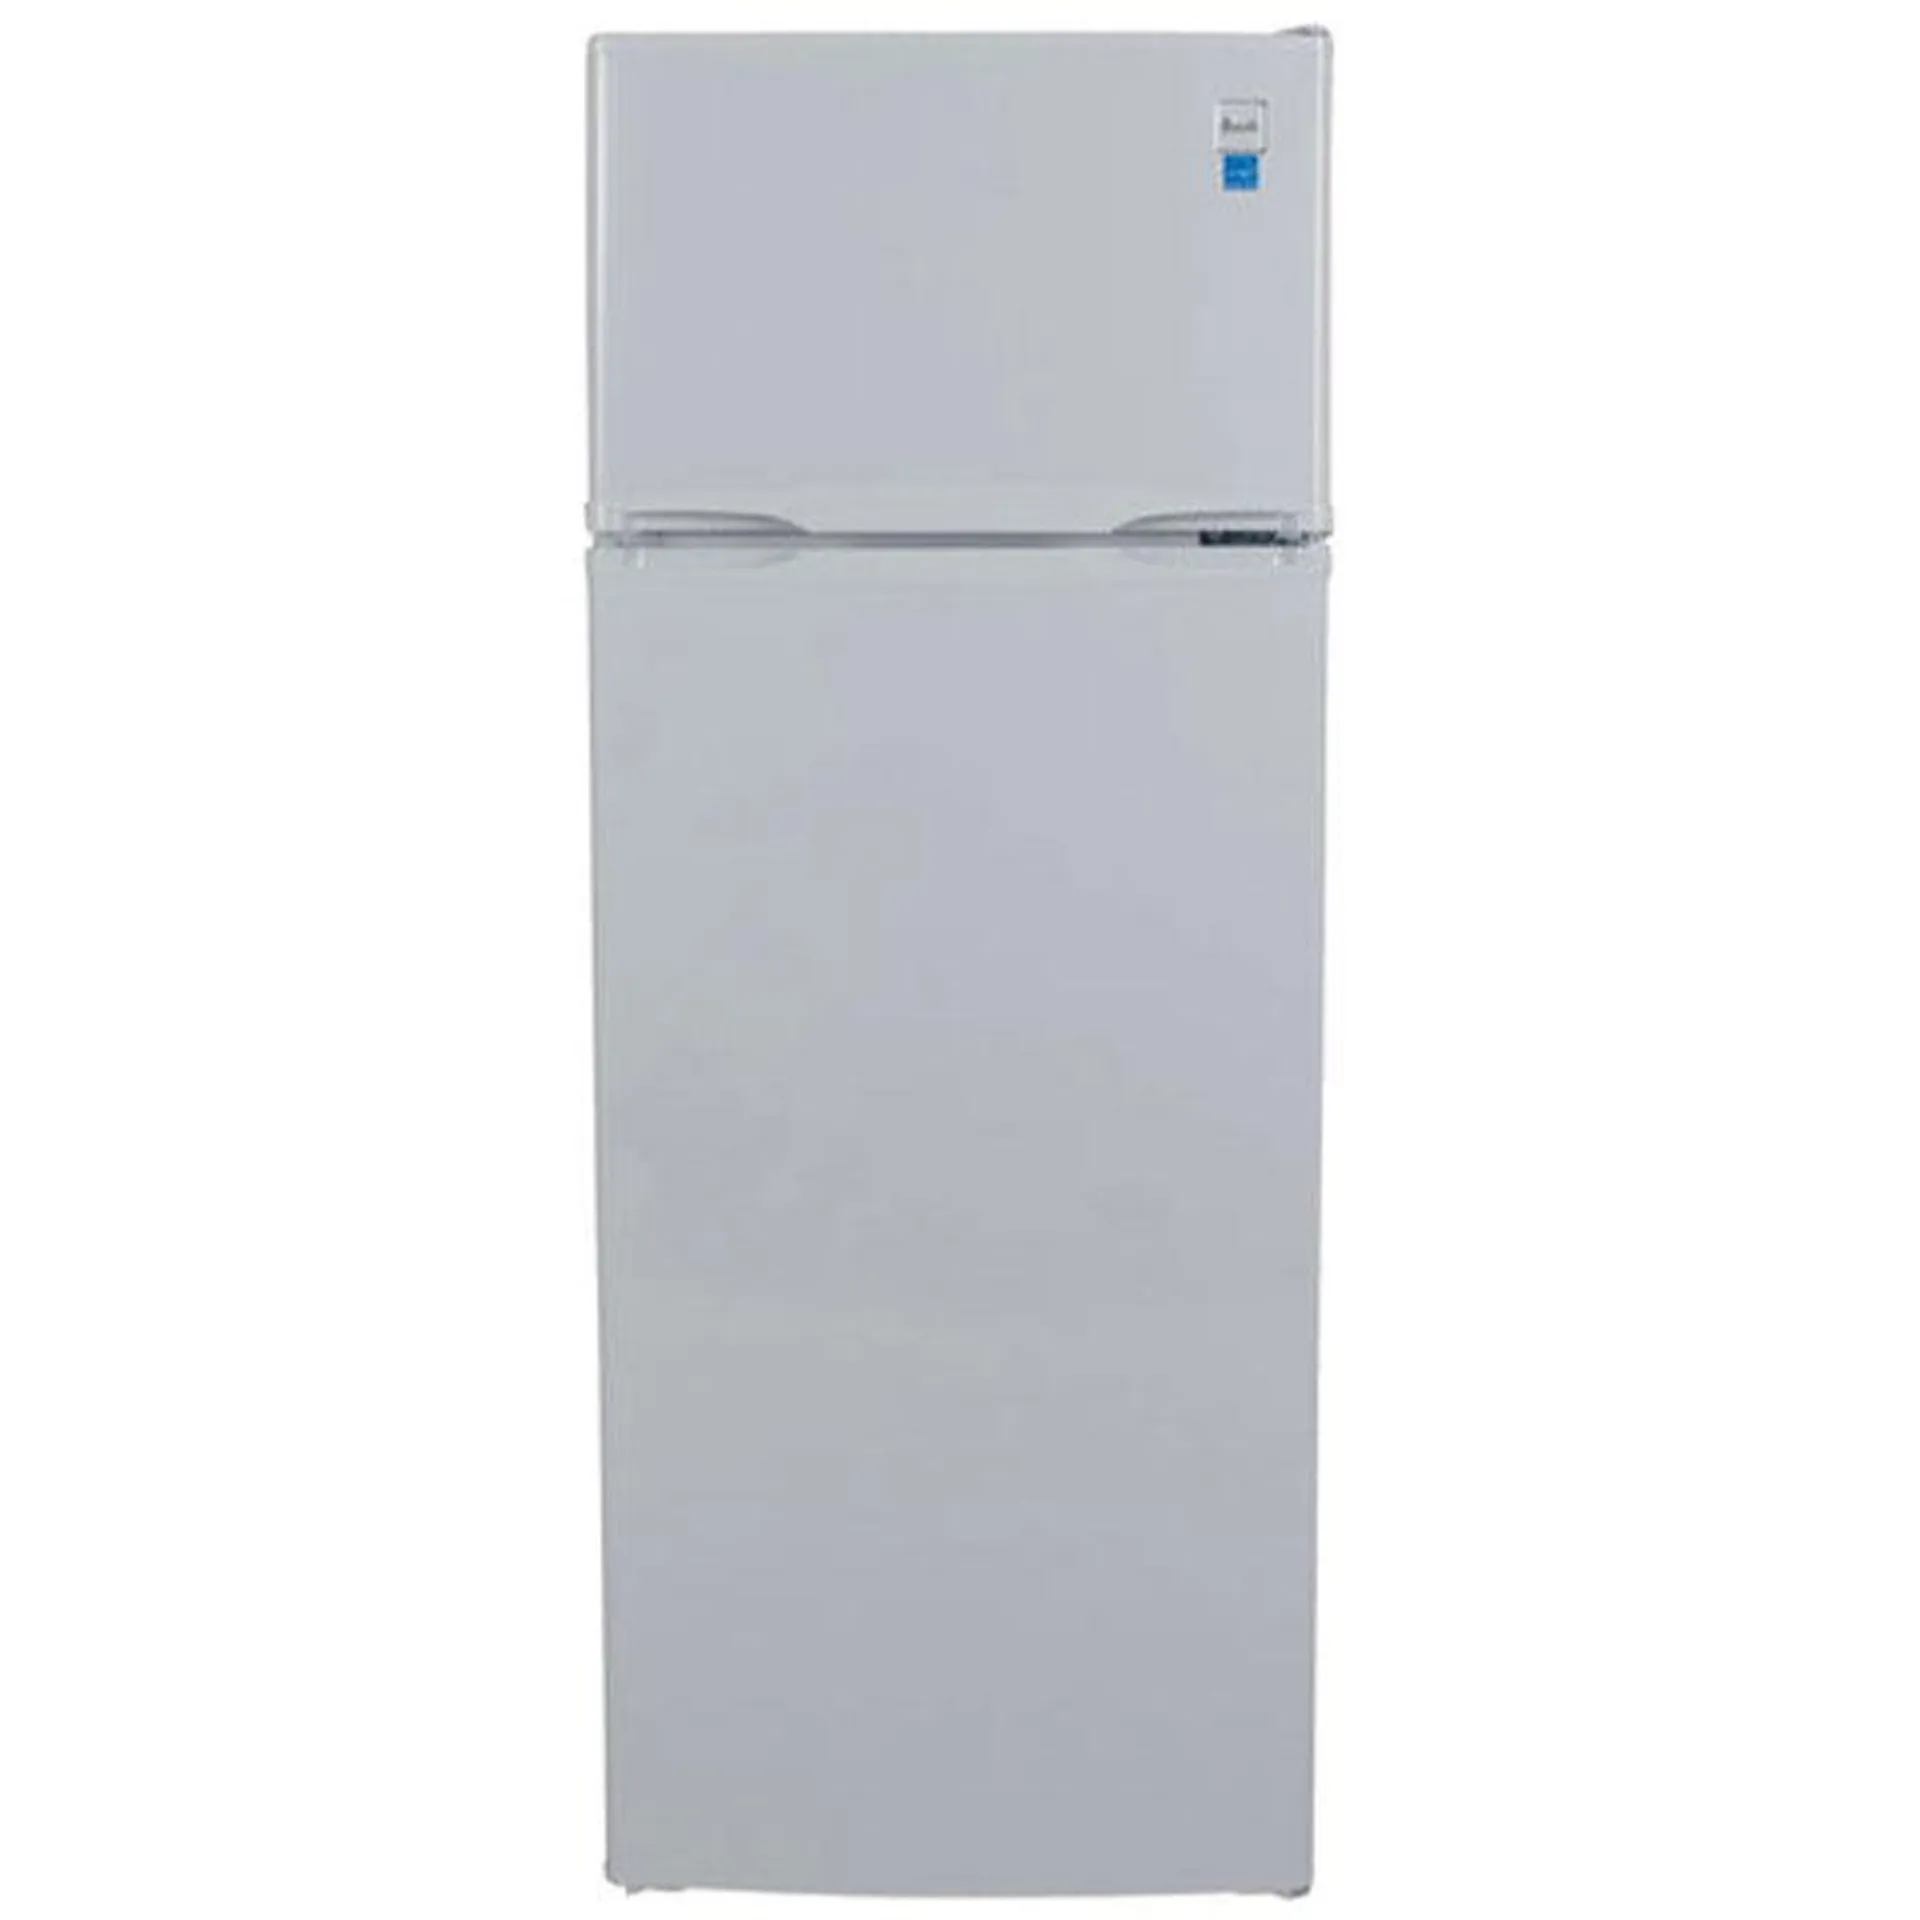 Avanti 22 in. 7.3 cu. ft. Top Freezer Refrigerator - White